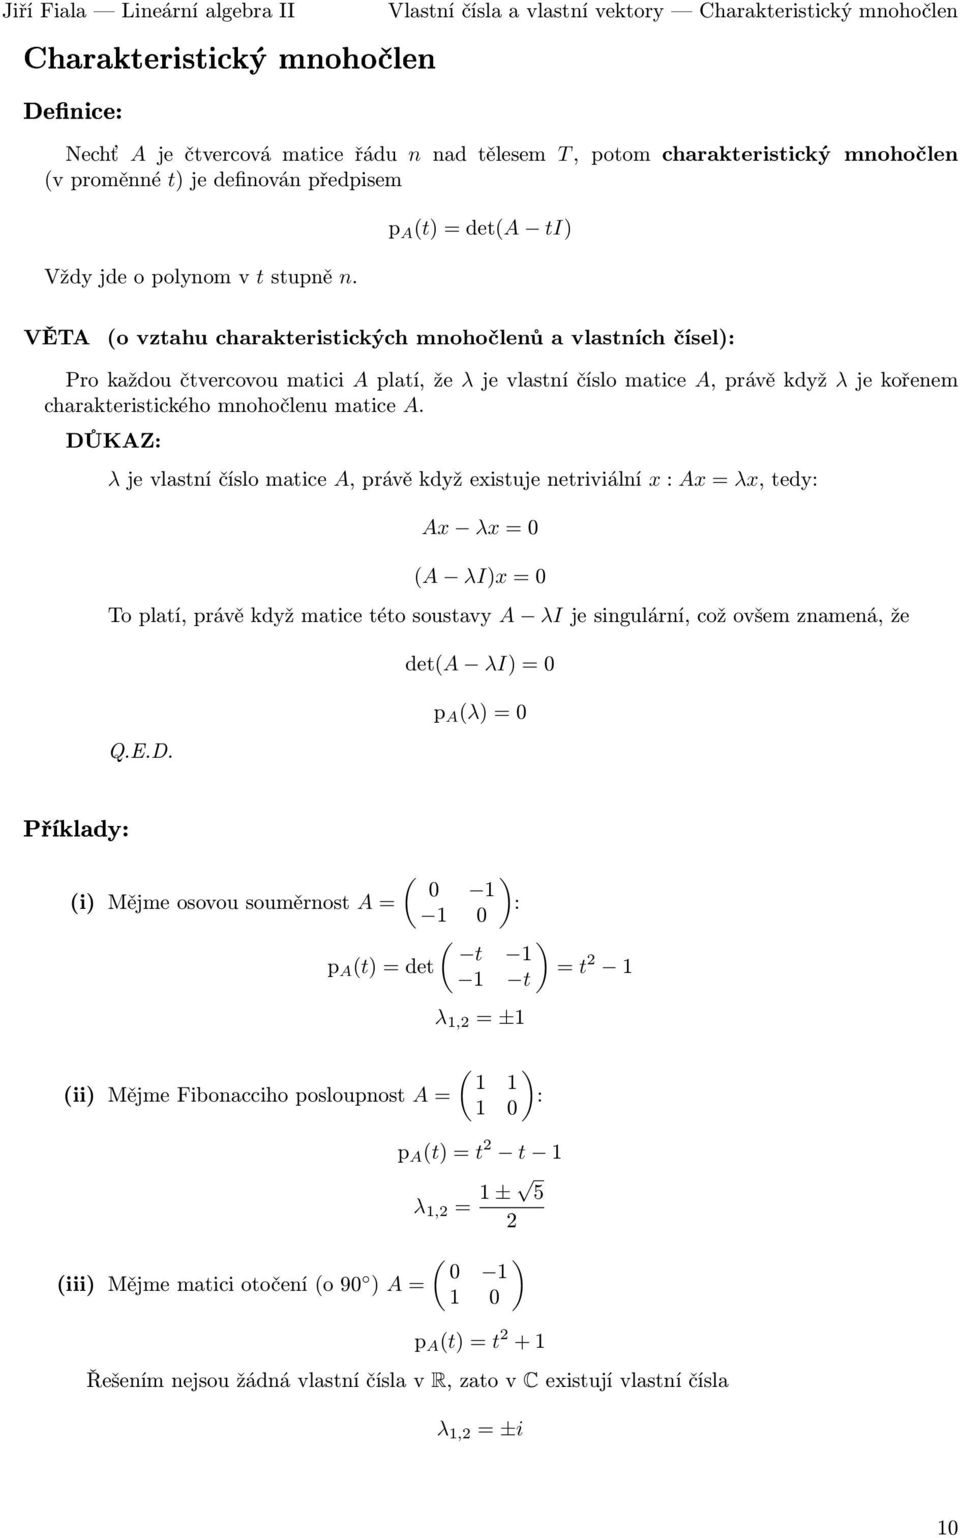 λjevlastníčíslomatice A,právěkdyž λjekořenem charakteristického mnohočlenu matice A λjevlastníčíslomatice A,právěkdyžexistujenetriviální x:ax=λx,tedy: Ax λx=0 (A λi)x=0